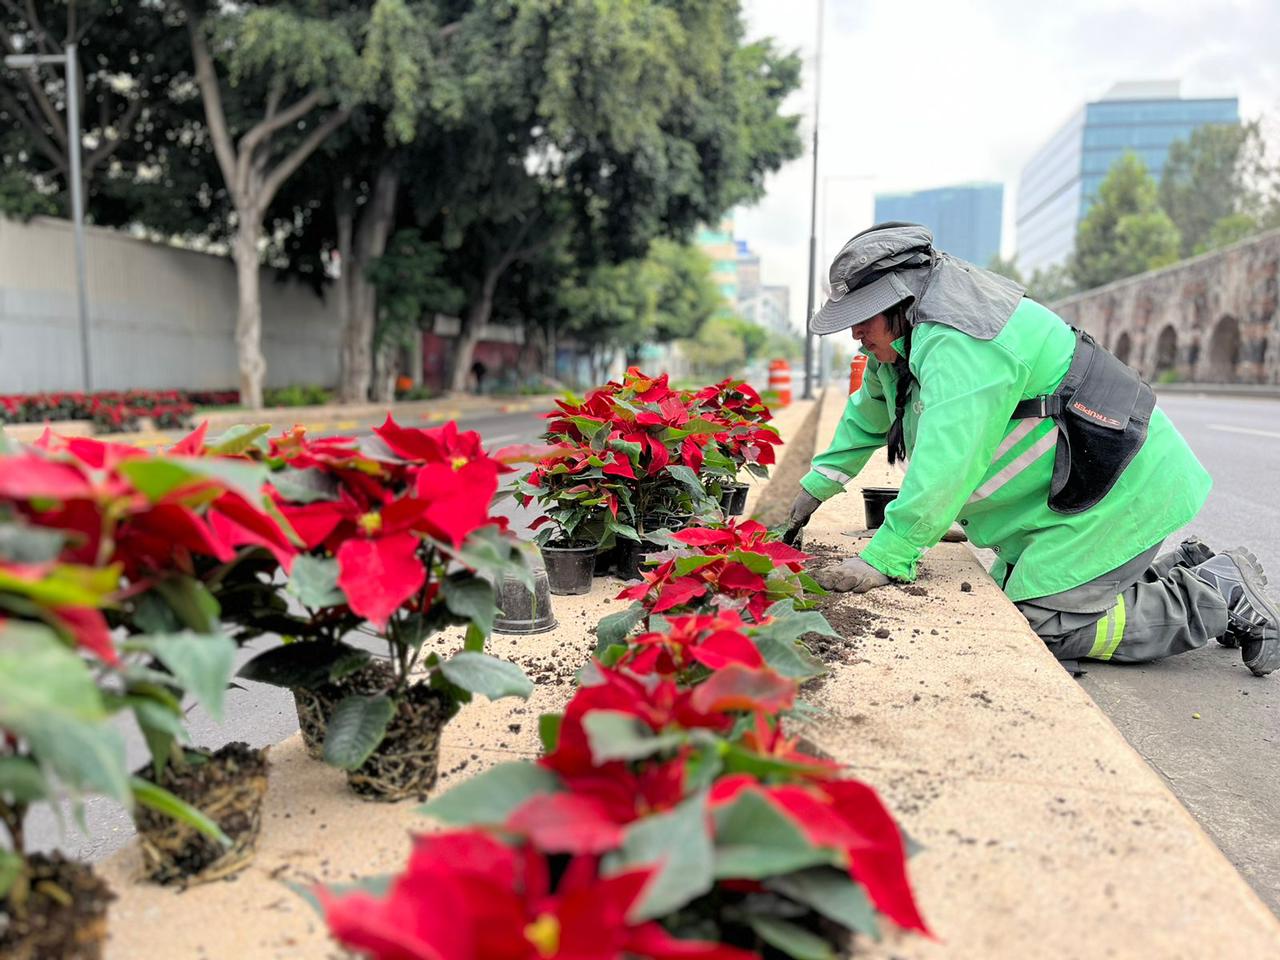 Inicia despliegue navideño en CDMX: 220 mil nochebuenas adornarán principales avenidas 